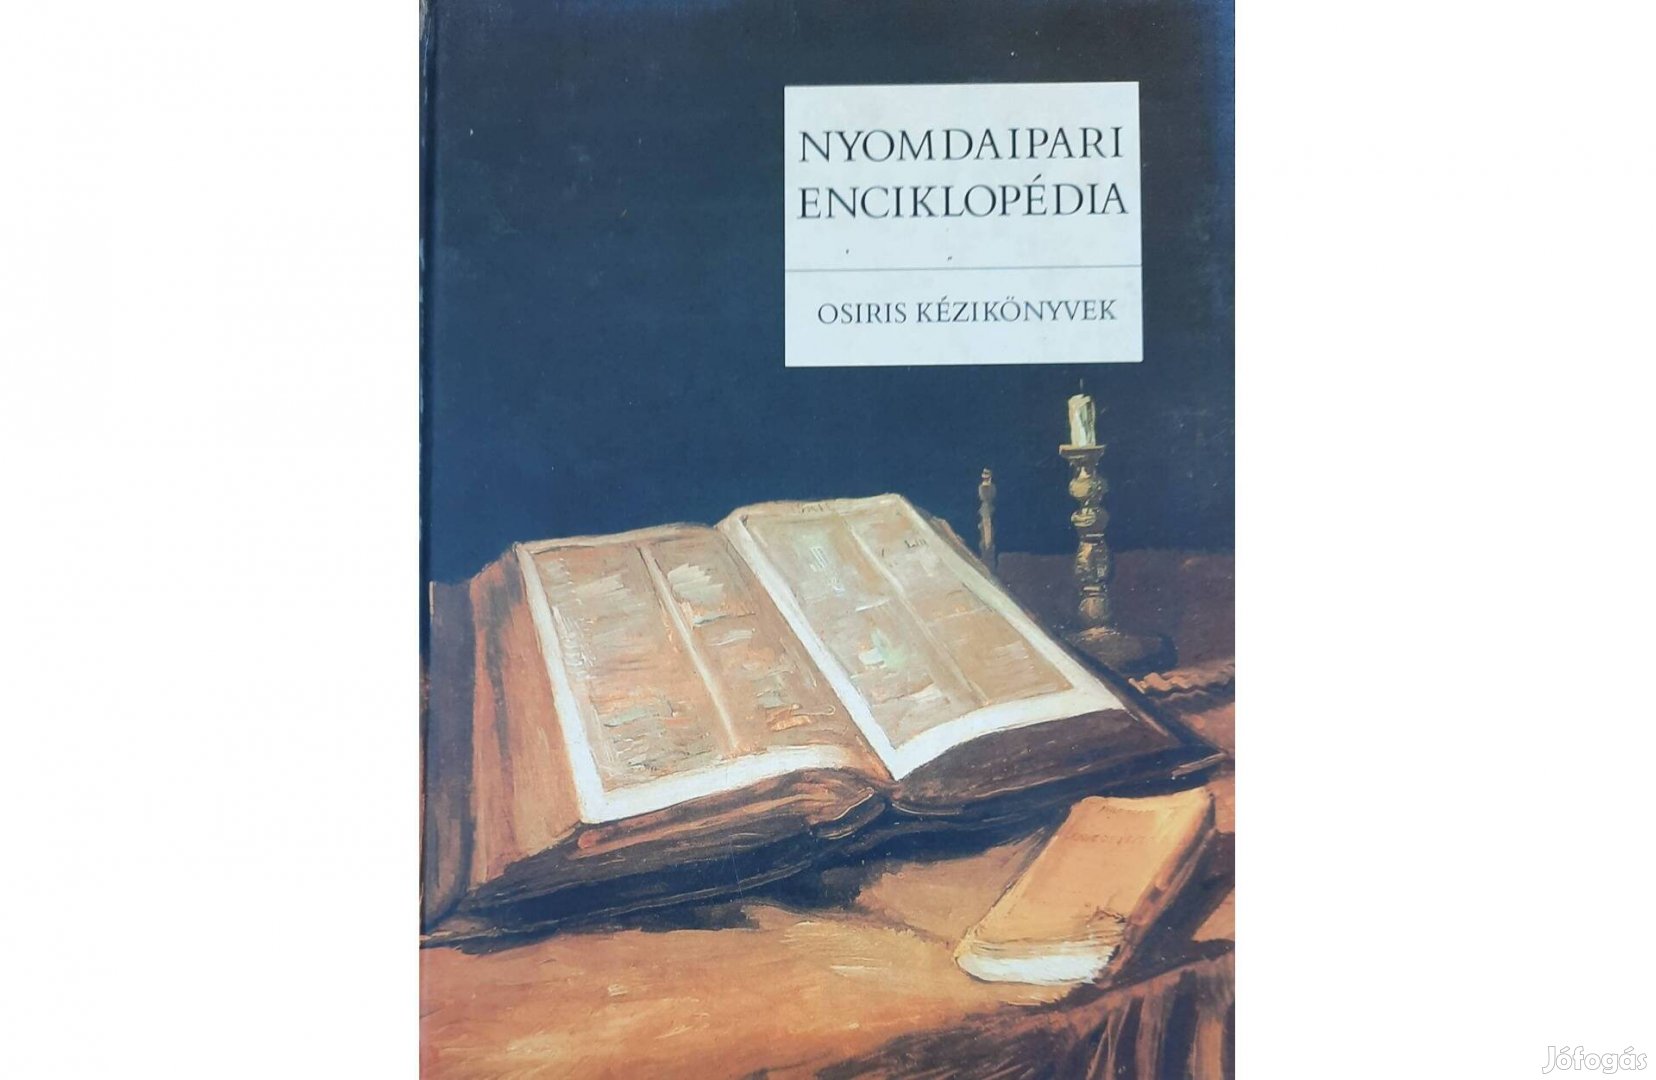 Nyomdaipari enciklopédia című könyv eladó